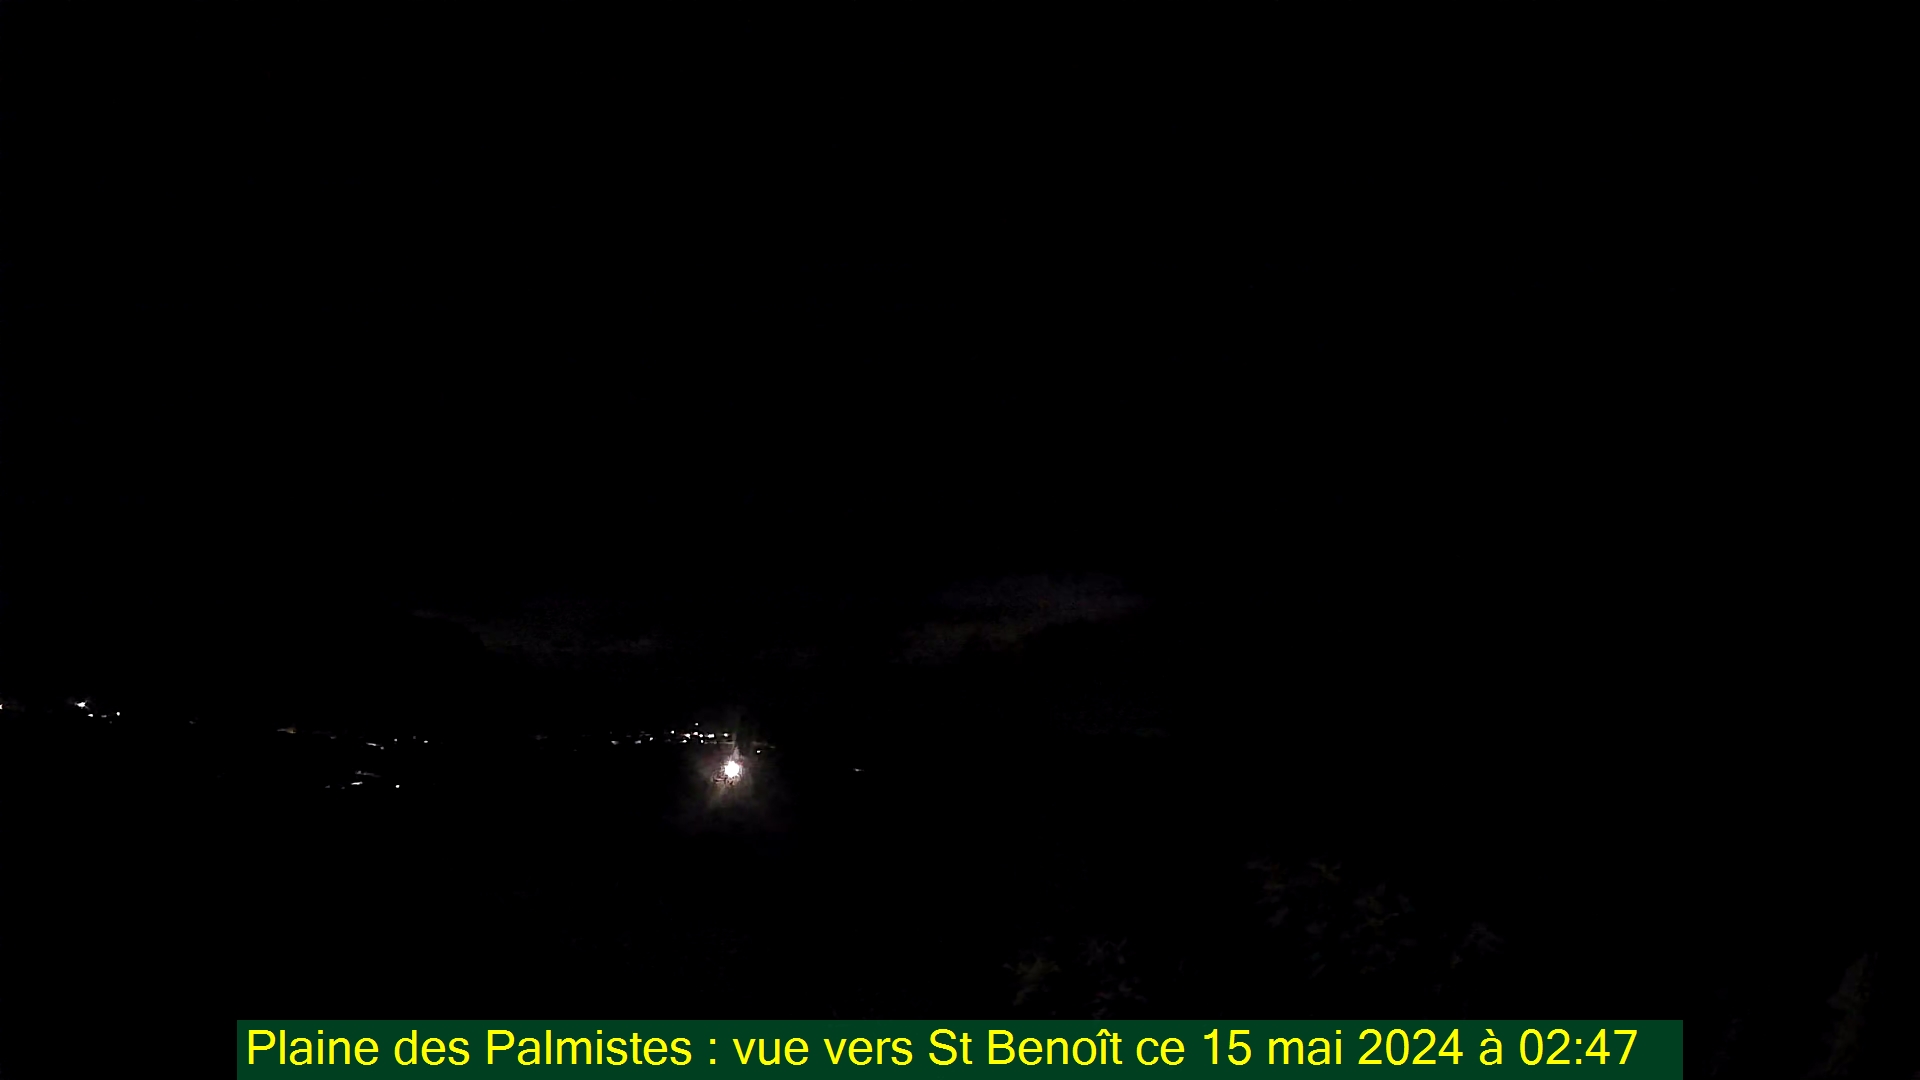 Saint-Denis (Réunion) Mon. 02:50